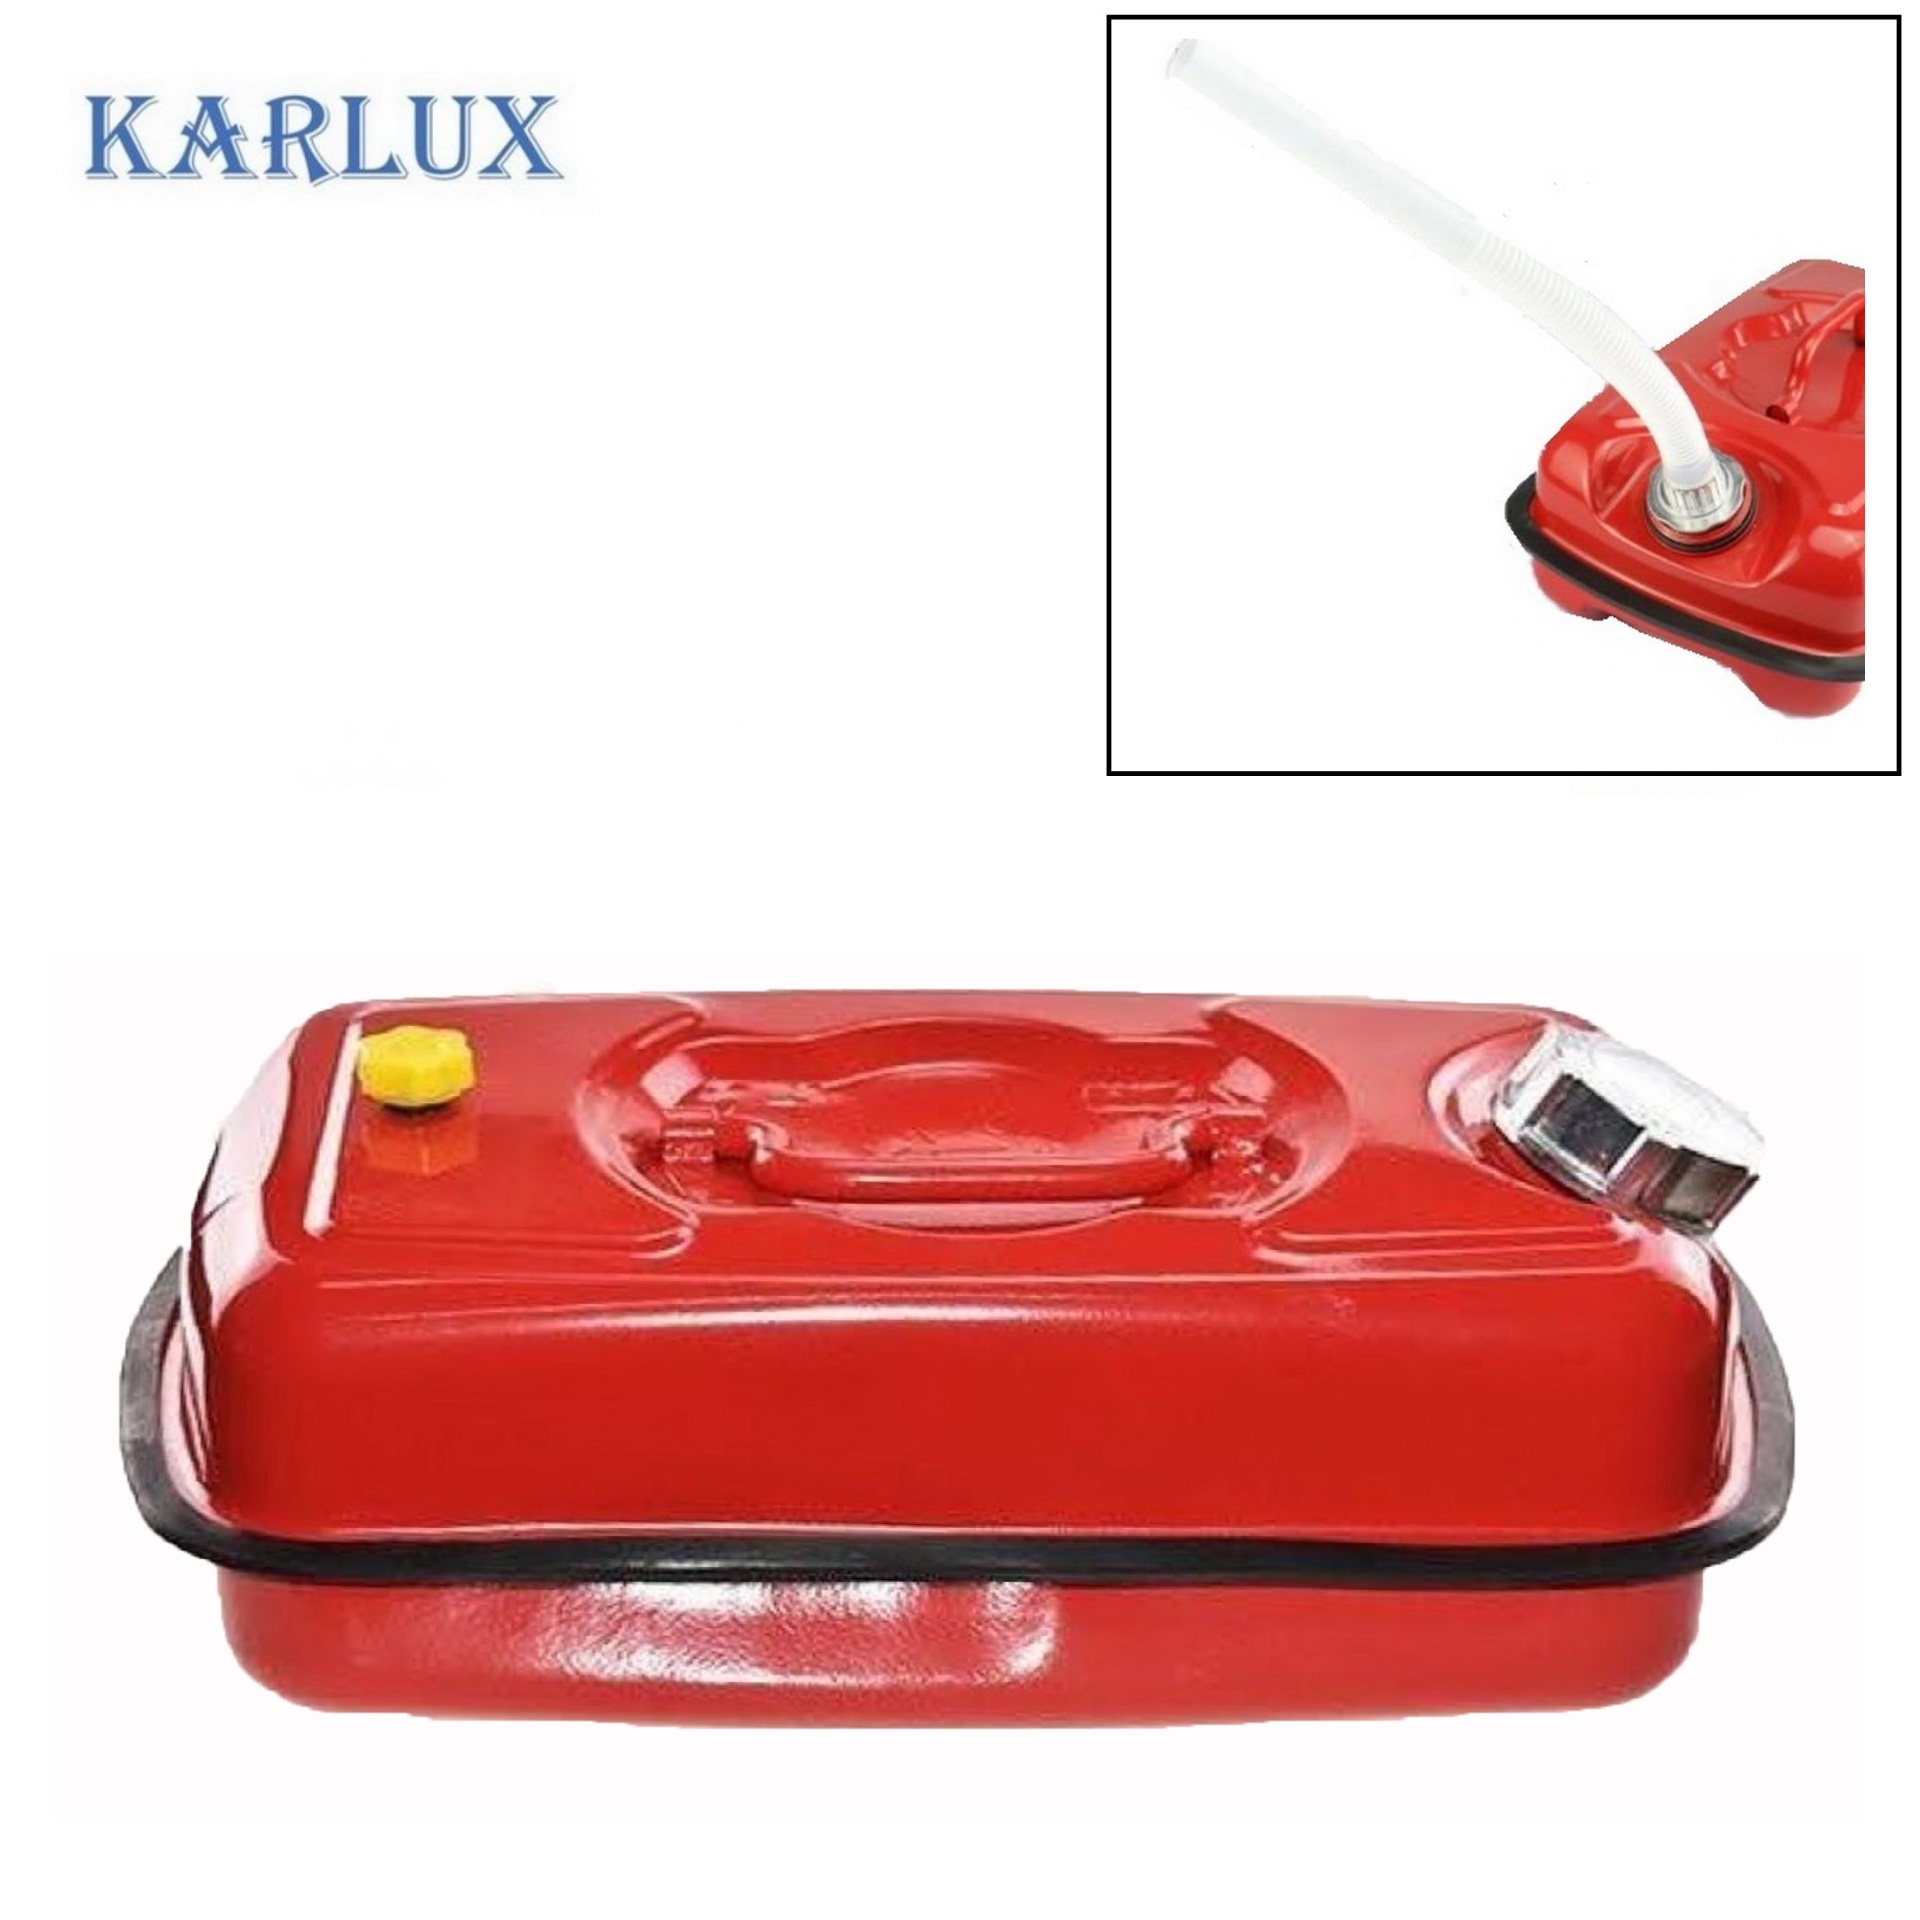 Karlux 5ลิตร ถังแกลลอนเหล็กเก็บน้ำมันสำรอง Fuel Tank ถังน้ำมันสีแดง พร้อมท่อเติมน้ำมัน